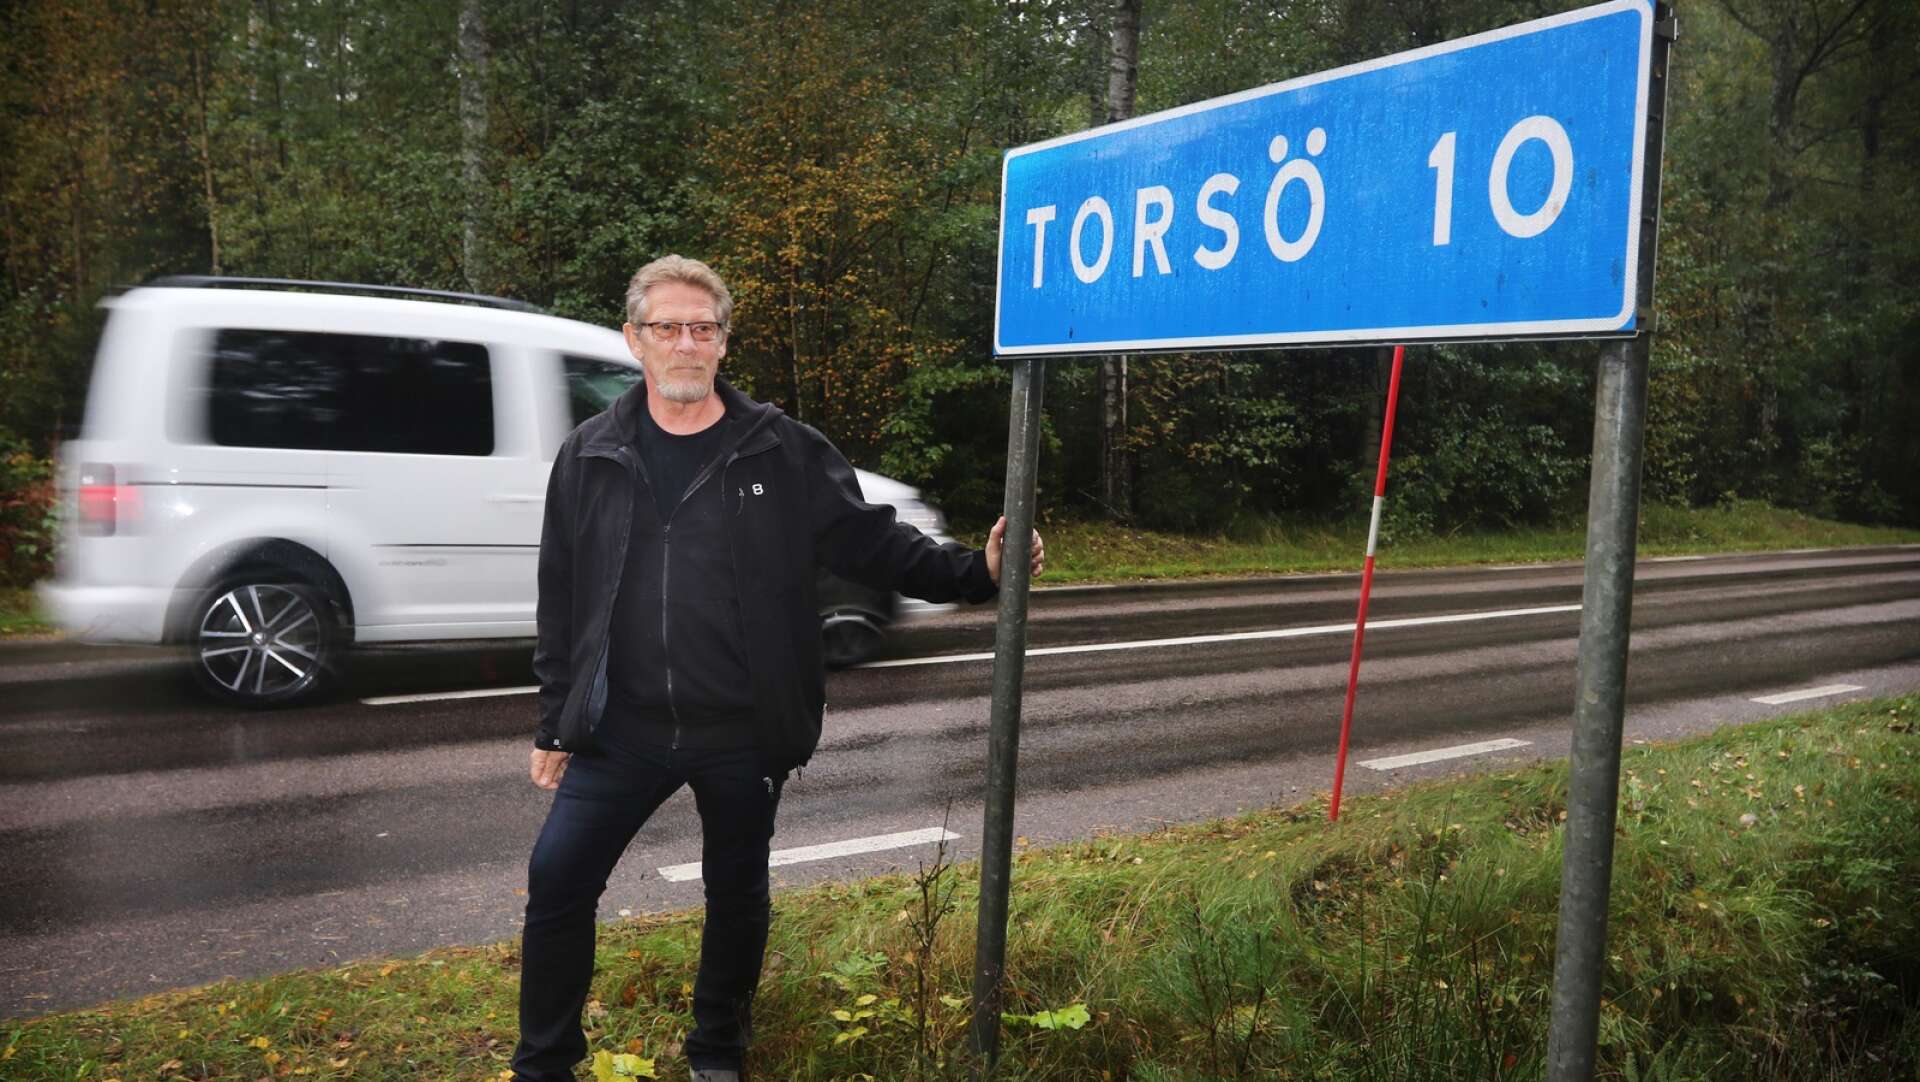 Peter Lundh vill, i ett medborgarförslag, göra en cykelväg till Torsö. Kommunen bifaller förslaget och kommer att jobba för att den cykelvägen prioriteras.